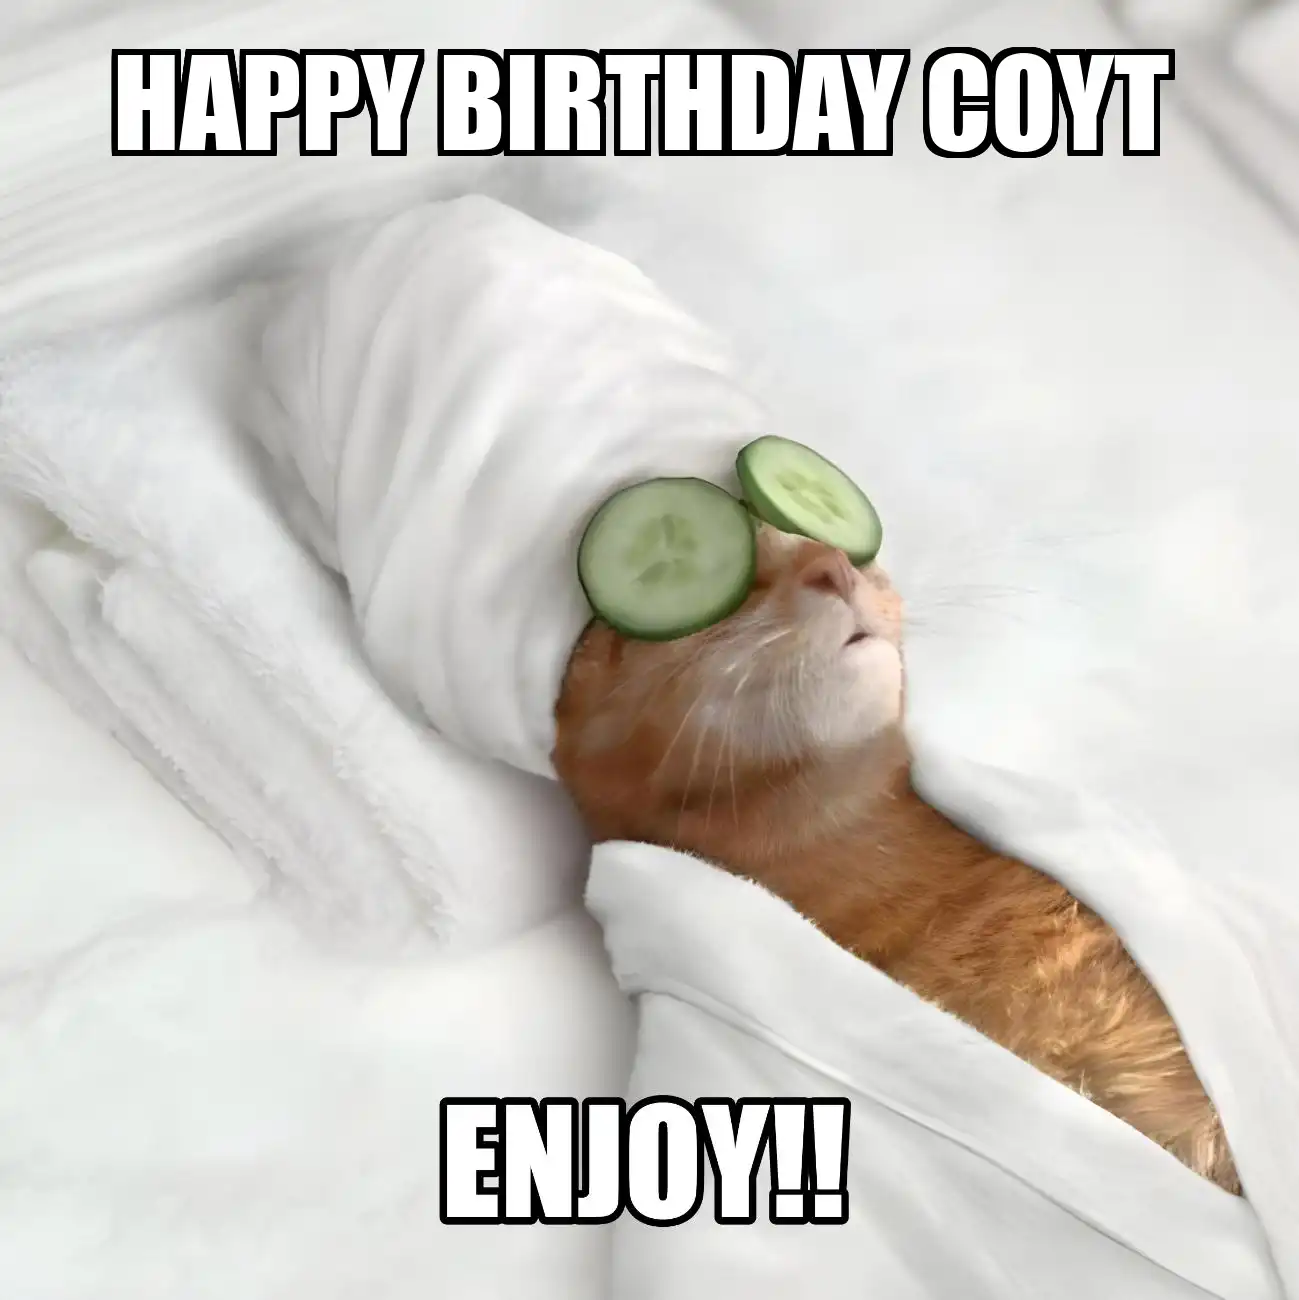 Happy Birthday Coyt Enjoy Cat Meme